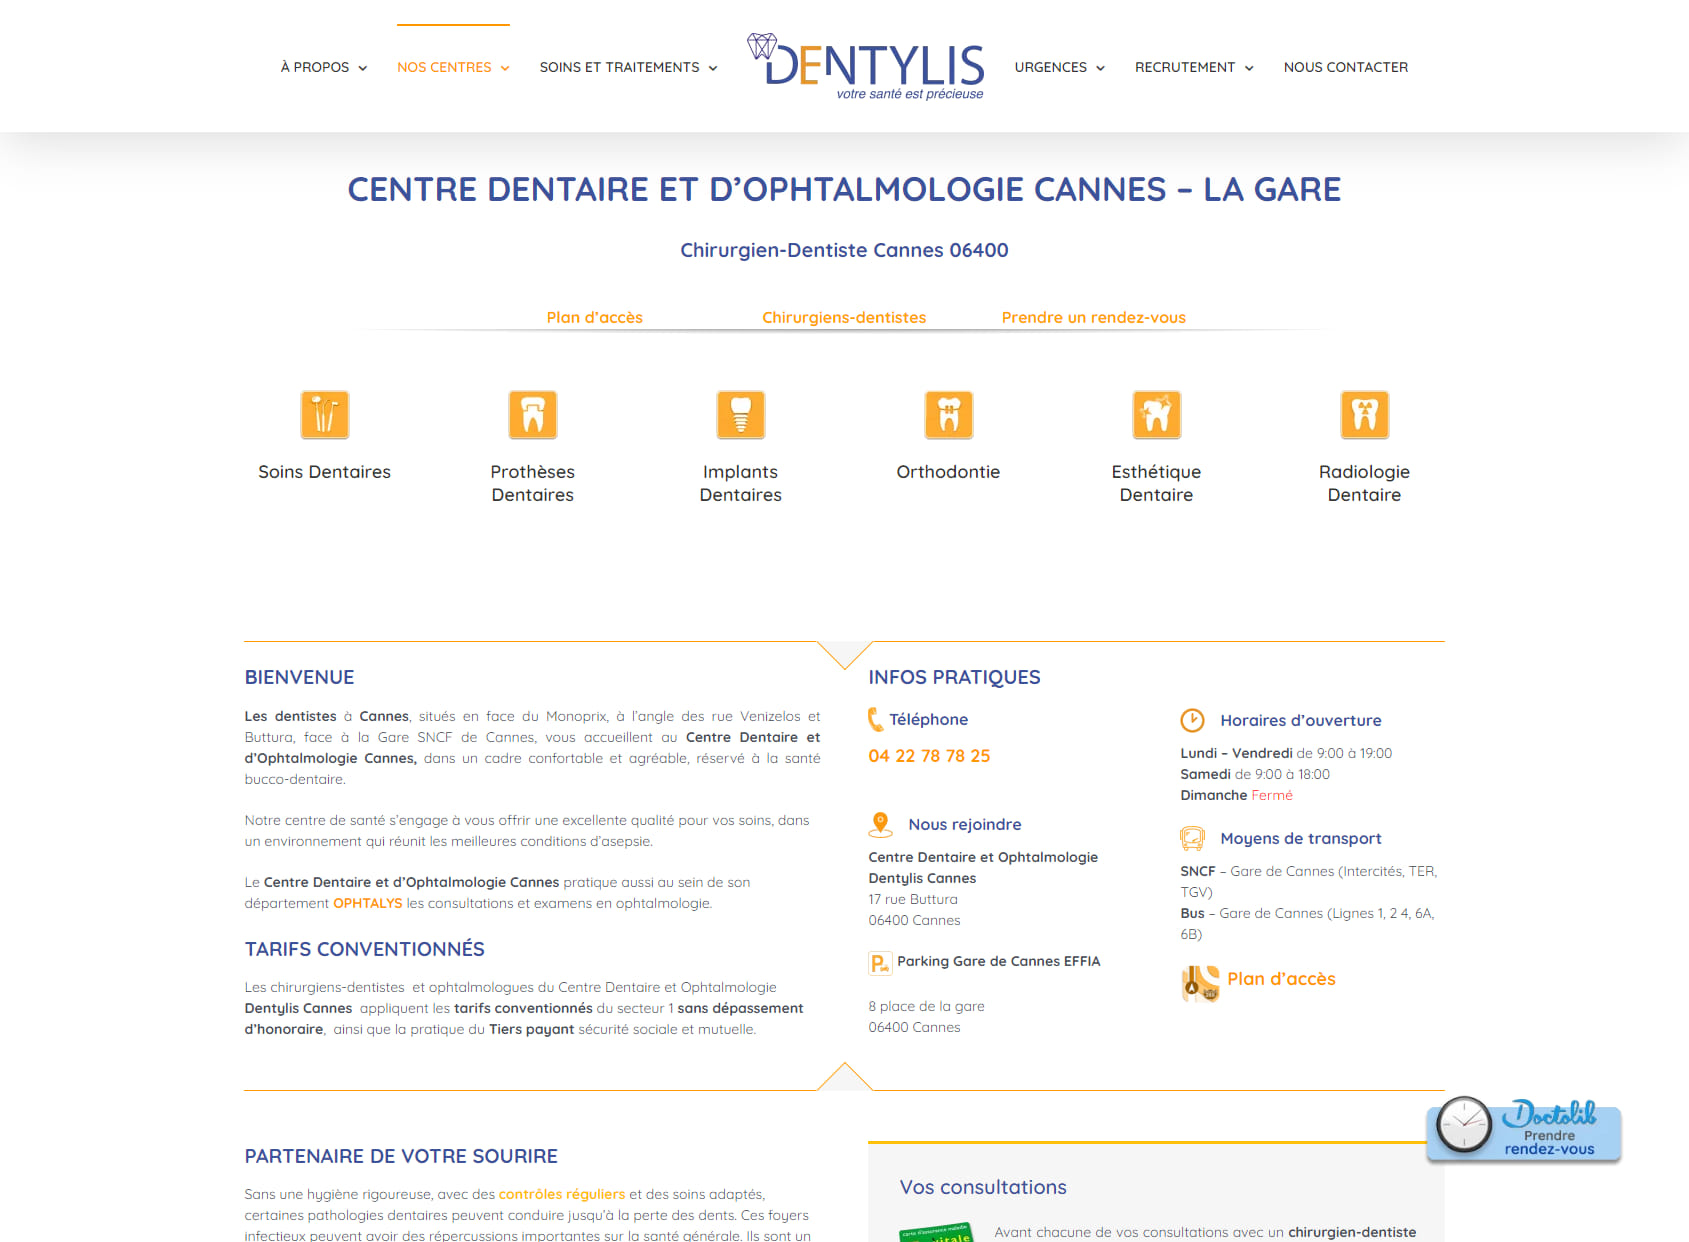 Centre Dentaire et Ophtalmologie Cannes : Dentistes & Ophtalmologues - Dentylis